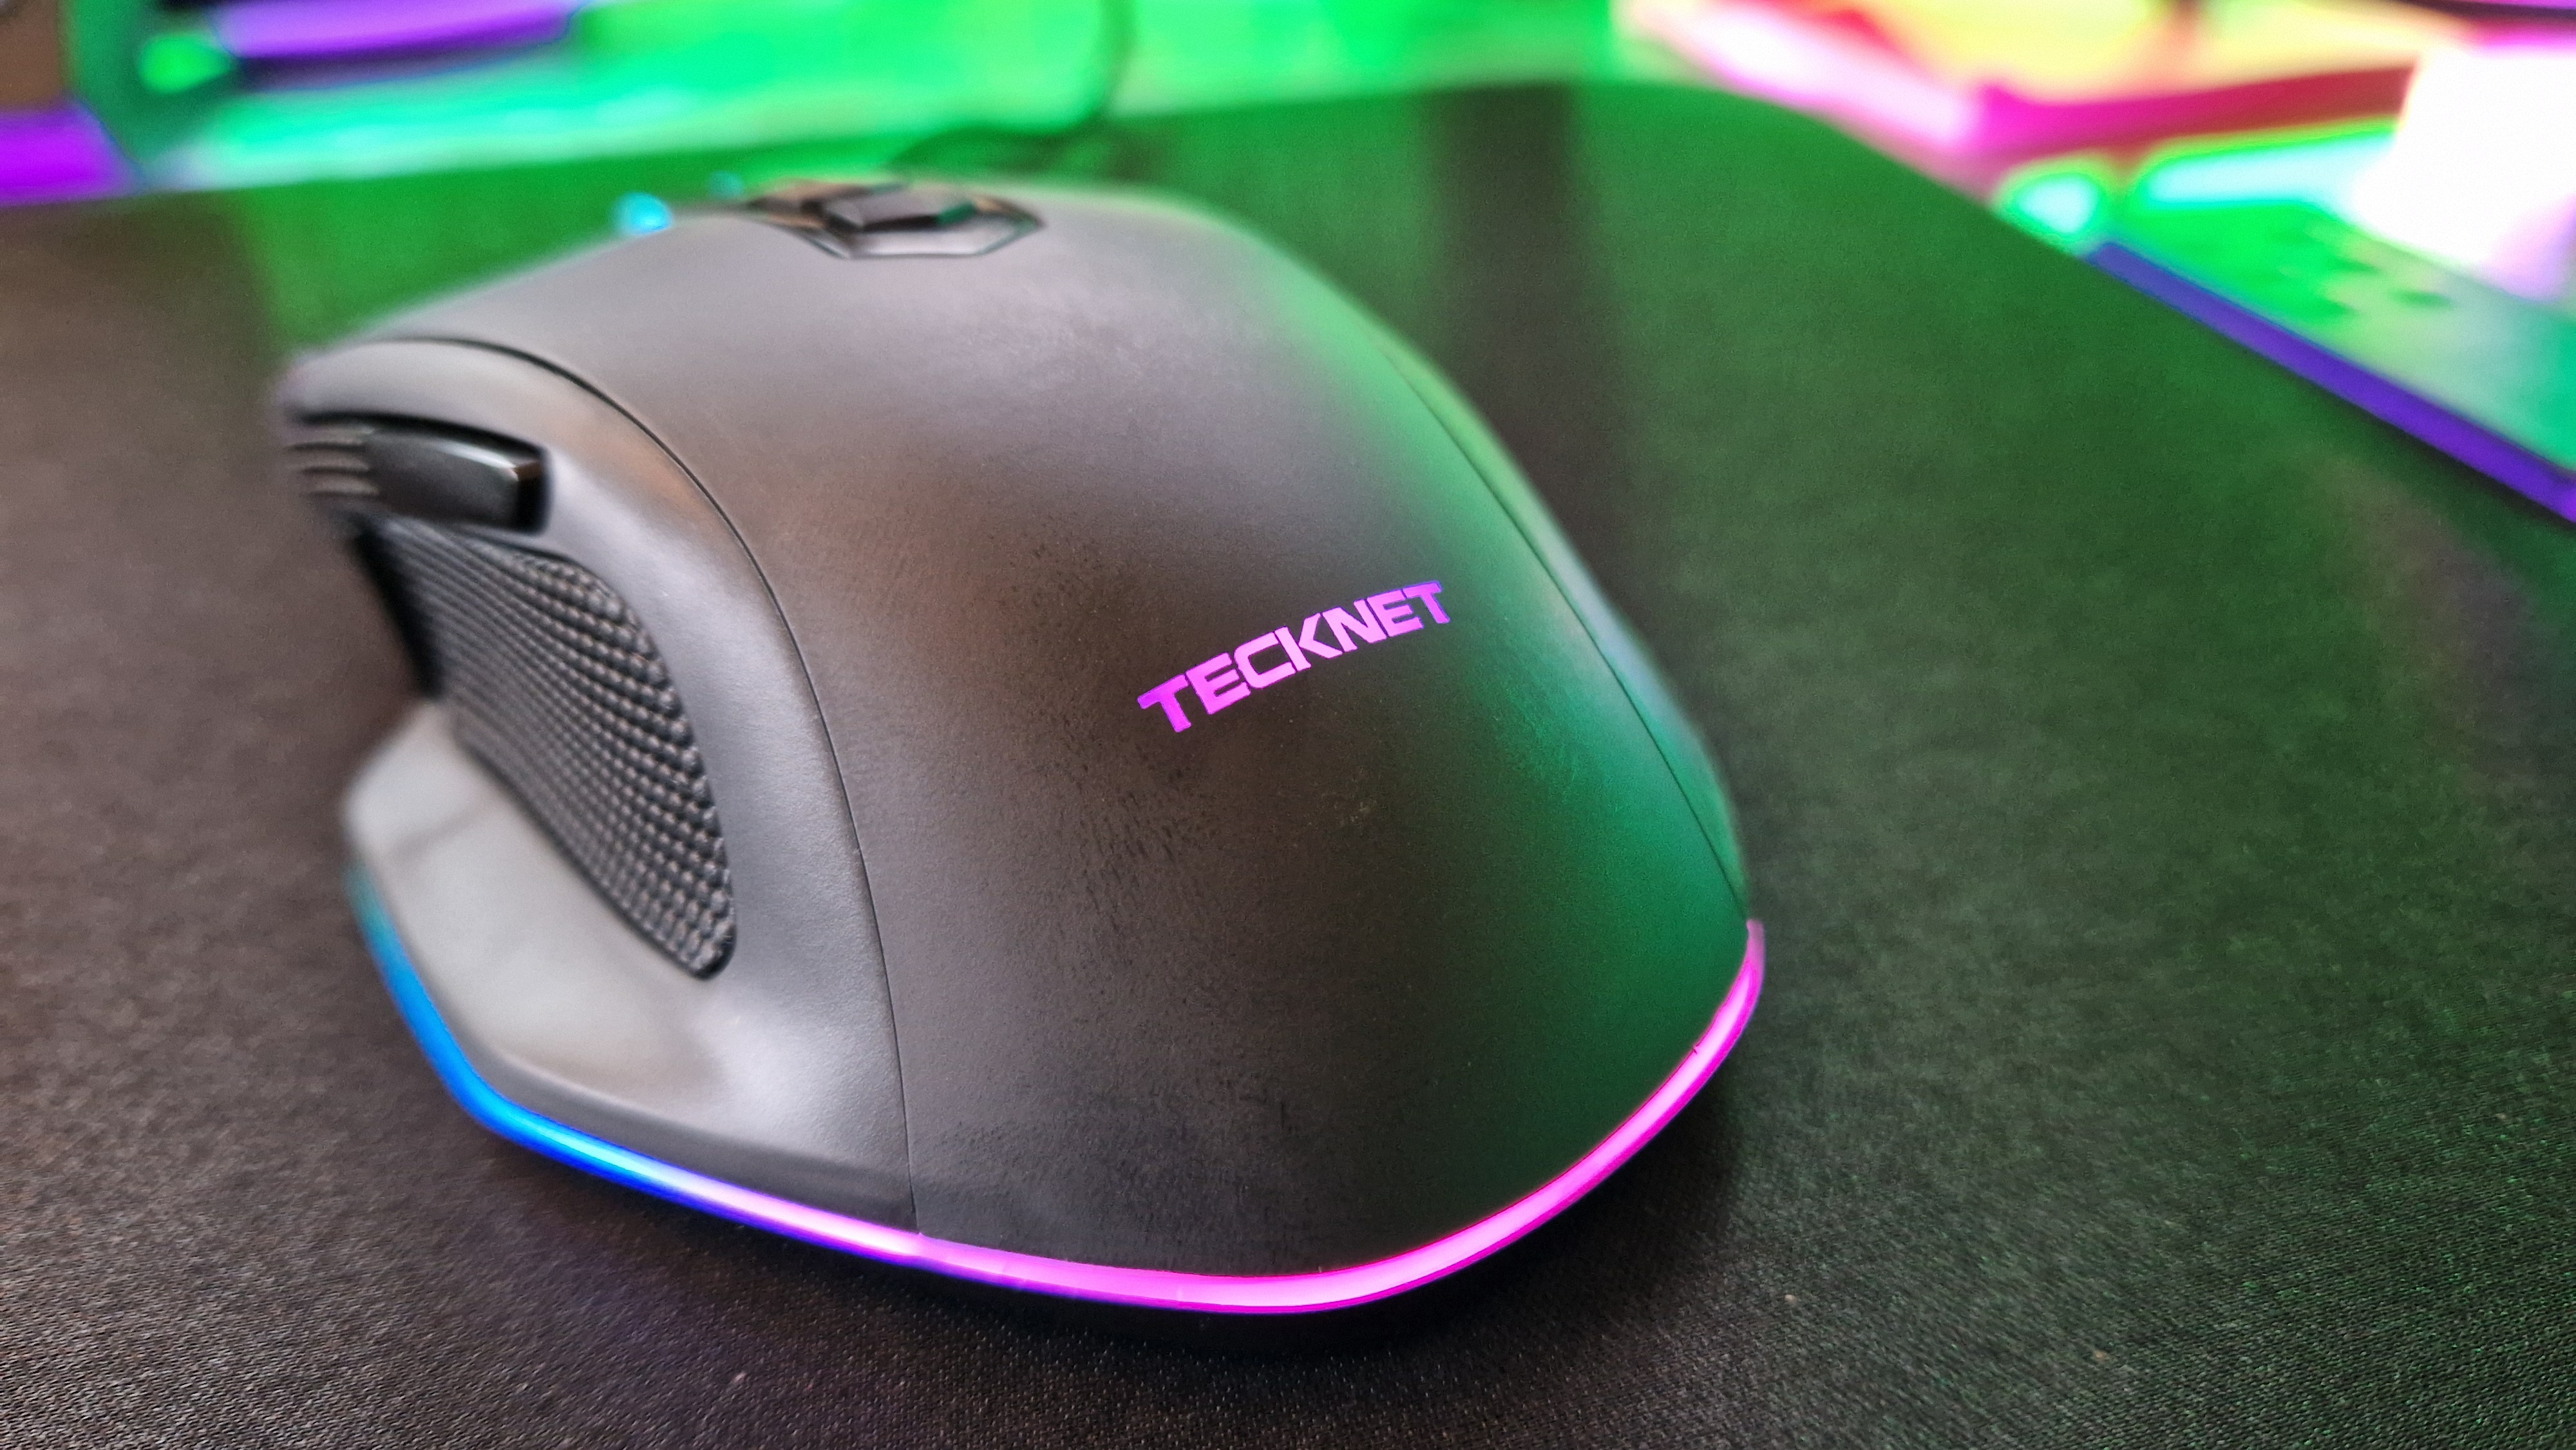 Tecknets RGB-Branding auf seiner Gaming-Maus